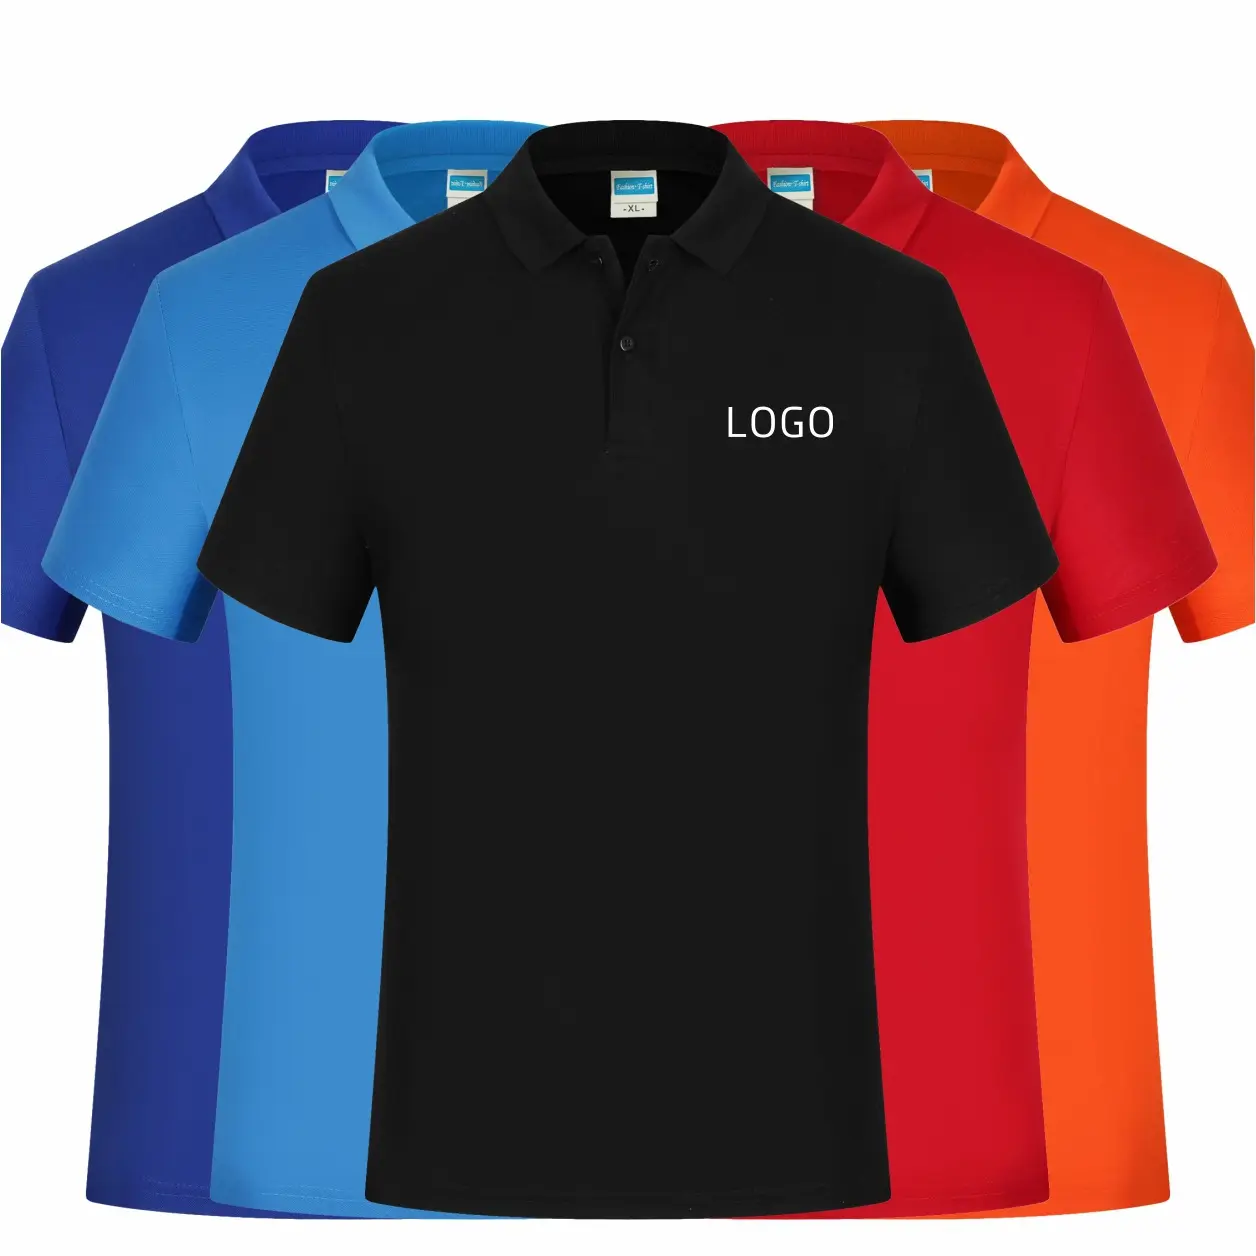 MT-24 по индивидуальному заказу 100% хлопковая рубашка-Поло рубашка с напечатанным логотипом или вышитого логотипа по индивидуальному заказу рекламные футболки